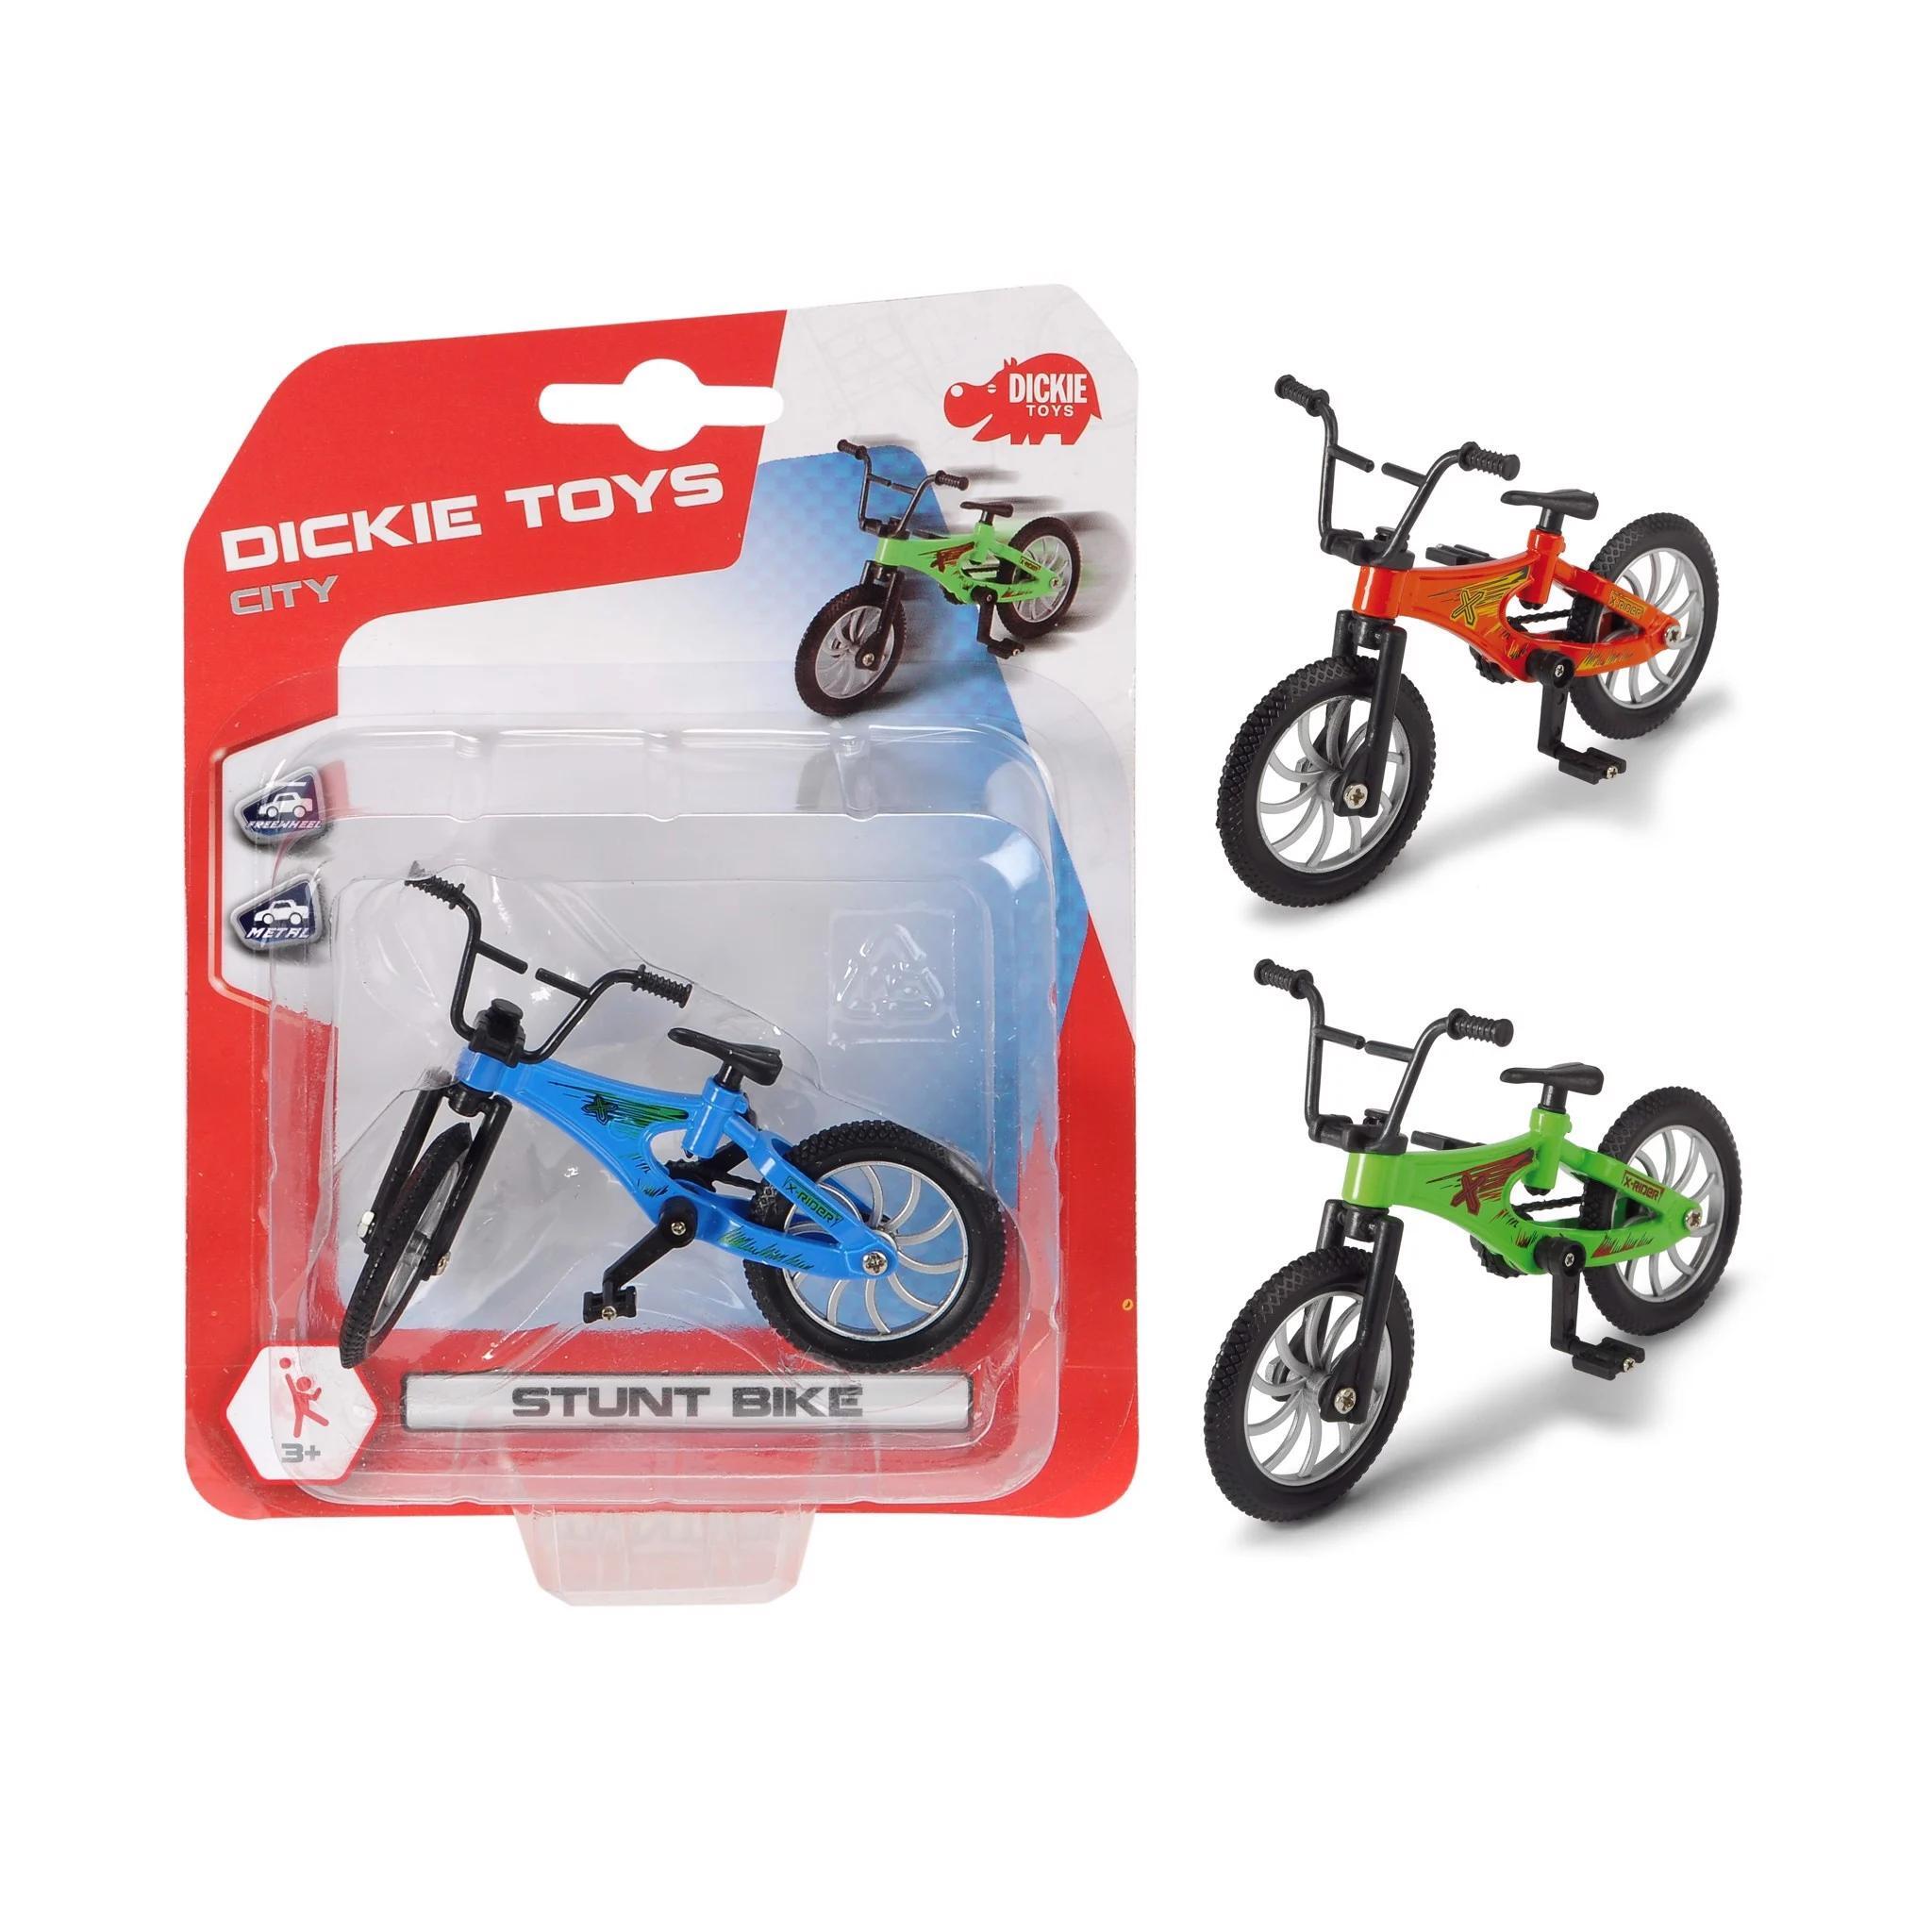 Đồ chơi Xe Đạp Dickie Toys Stunt Bike 203341019